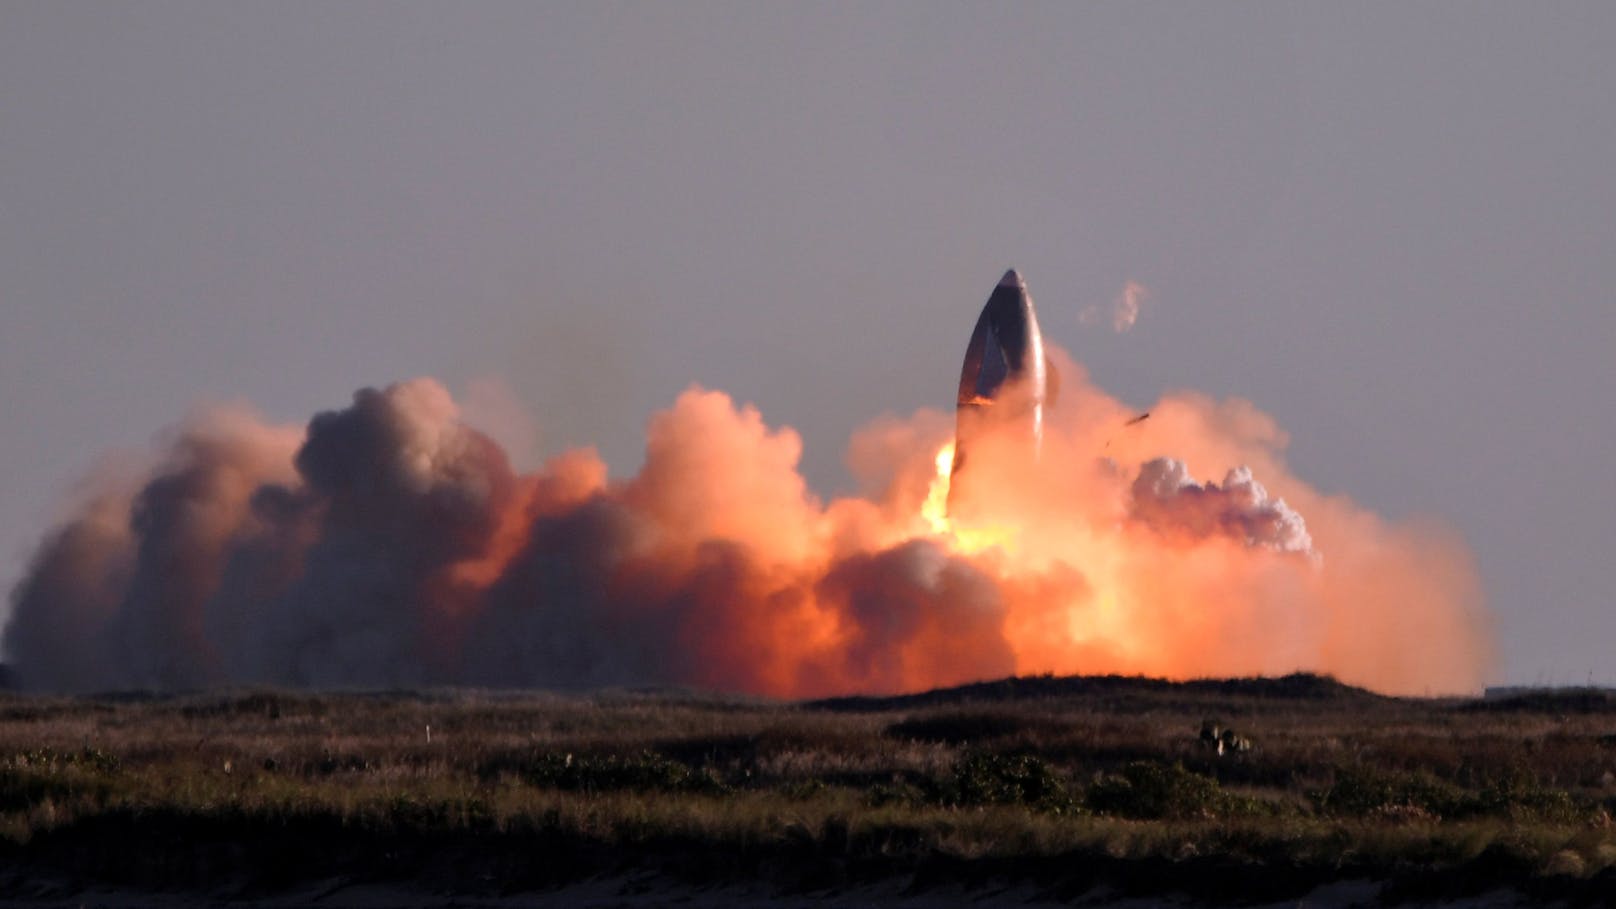 Geschwindigkeit beim Landeanflug zu hoch: Ein Starship-Prototyp der Raumfahrt-Firma SpaceX ist nach einem Testflug explodiert.